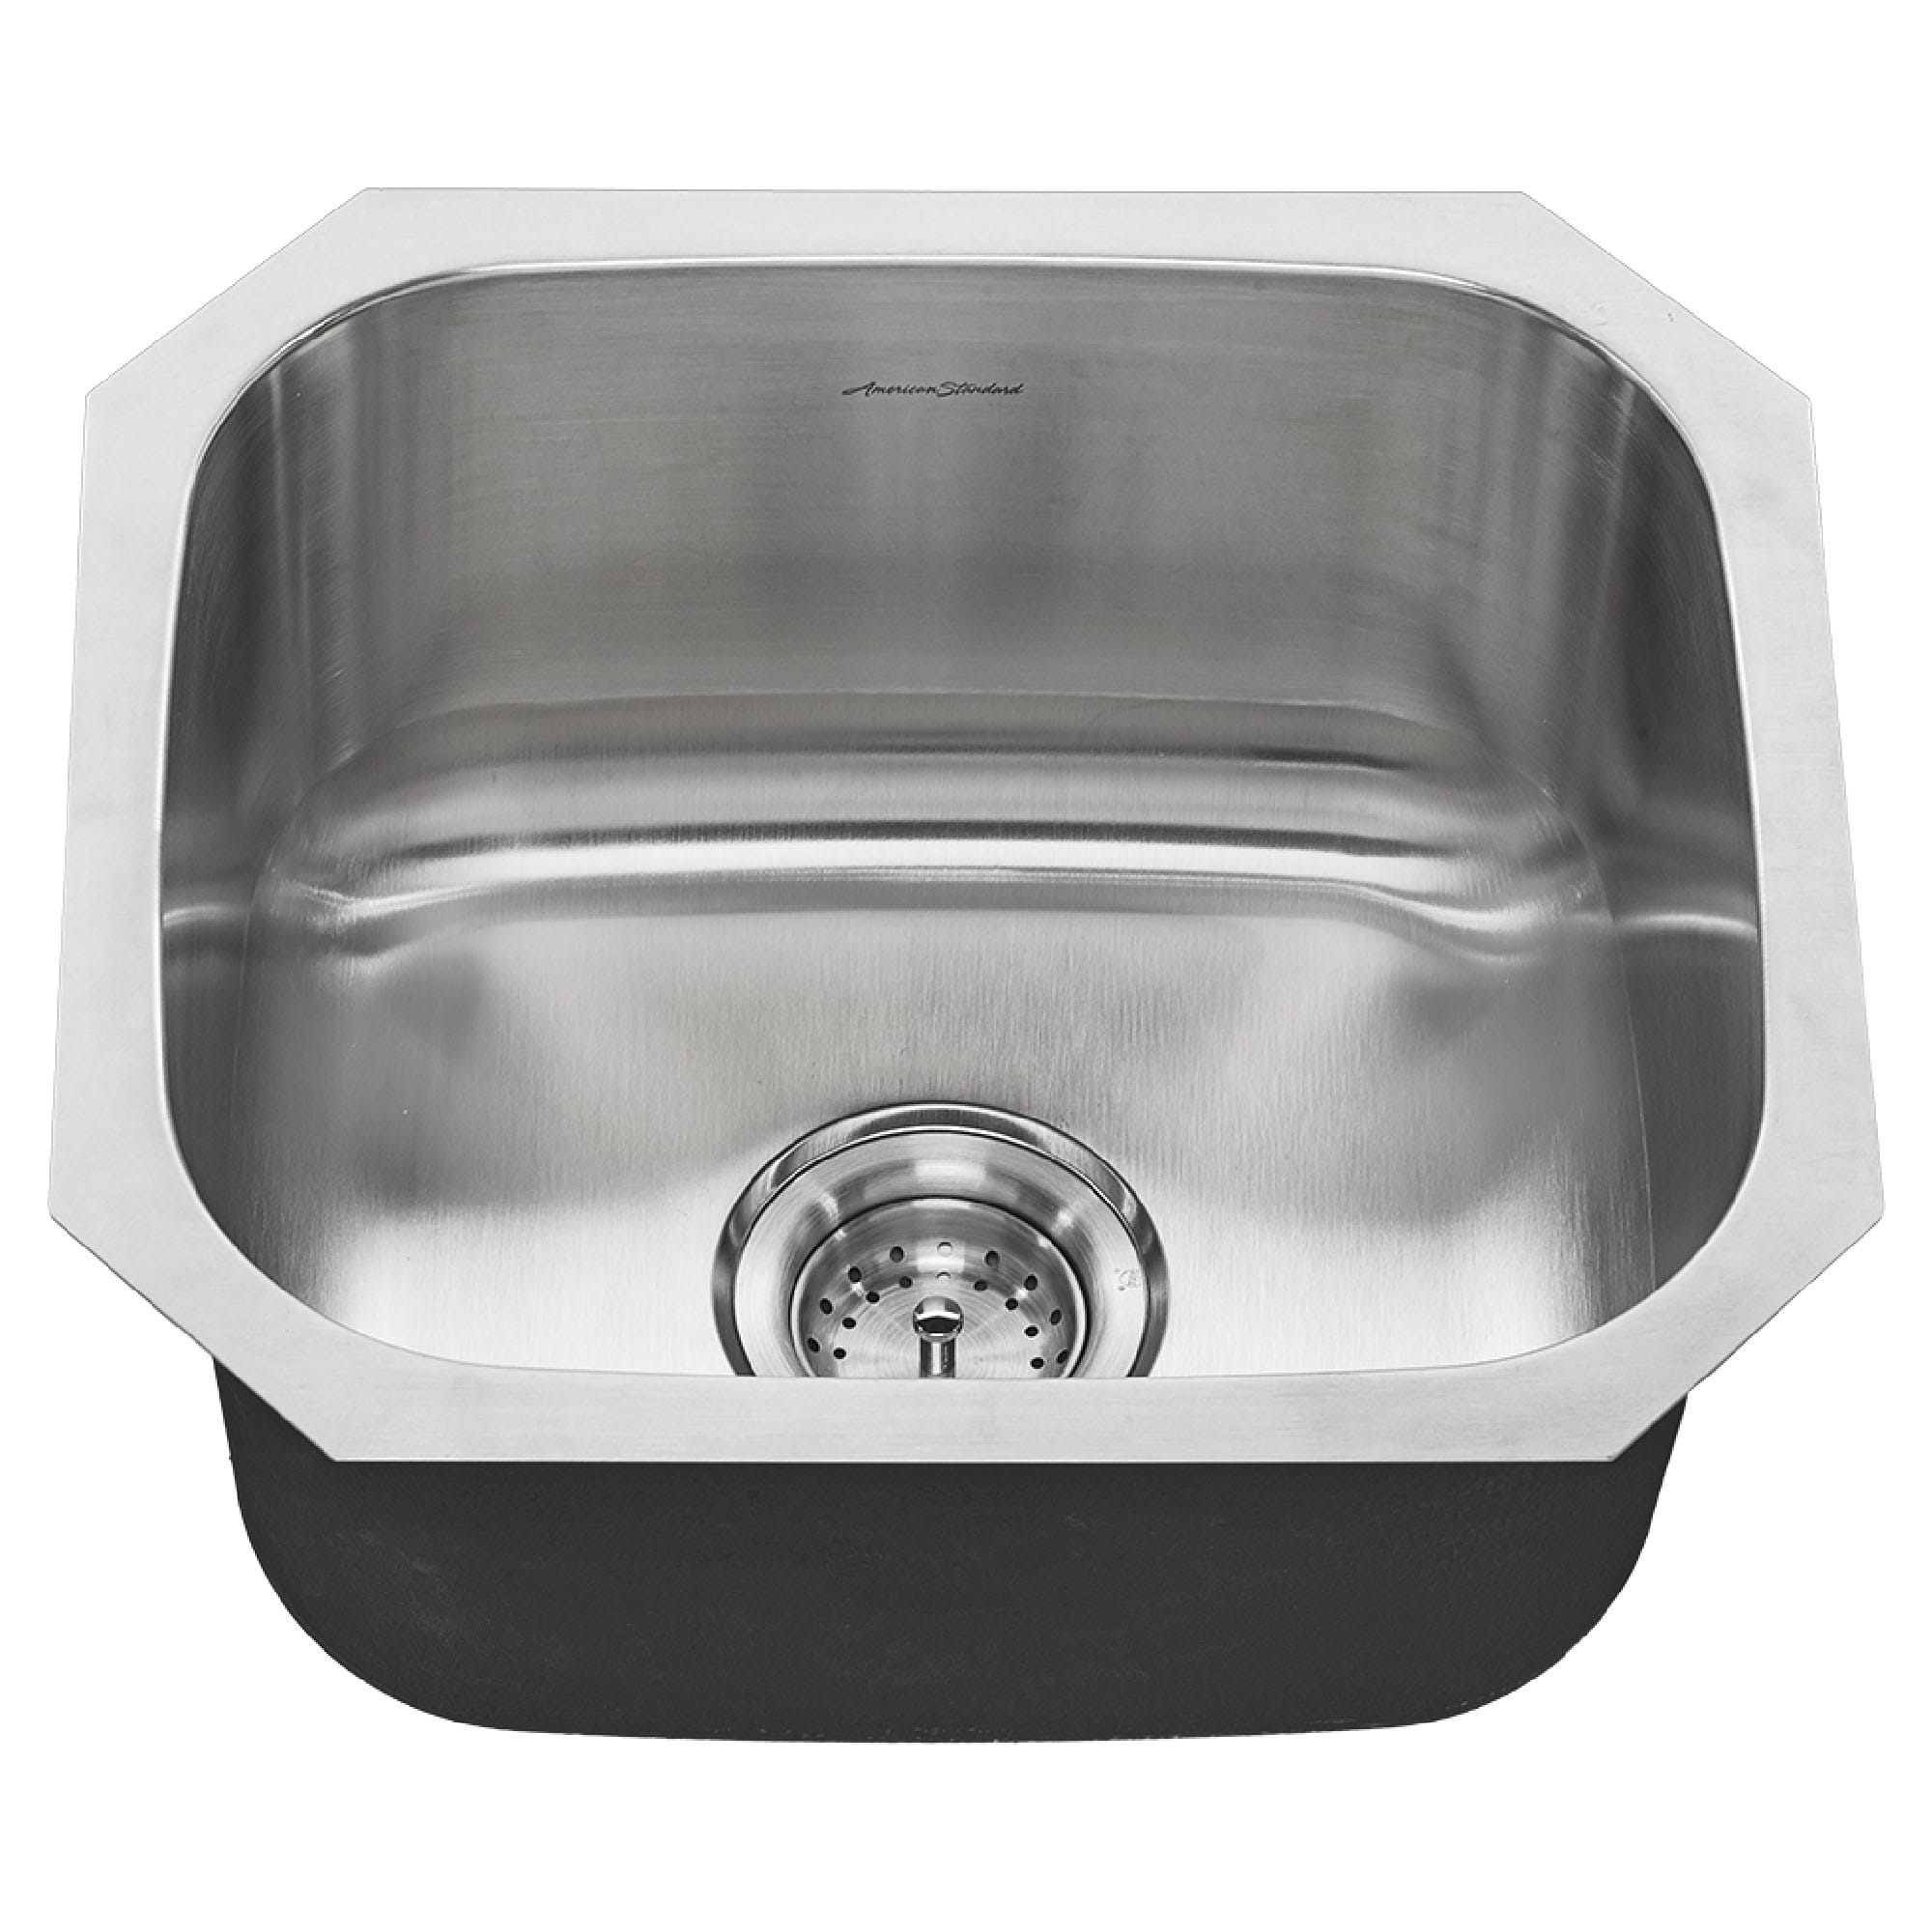 Portsmouth® 18 x 16-Inch Stainless Steel Undermount Single Bowl Kitchen Sink